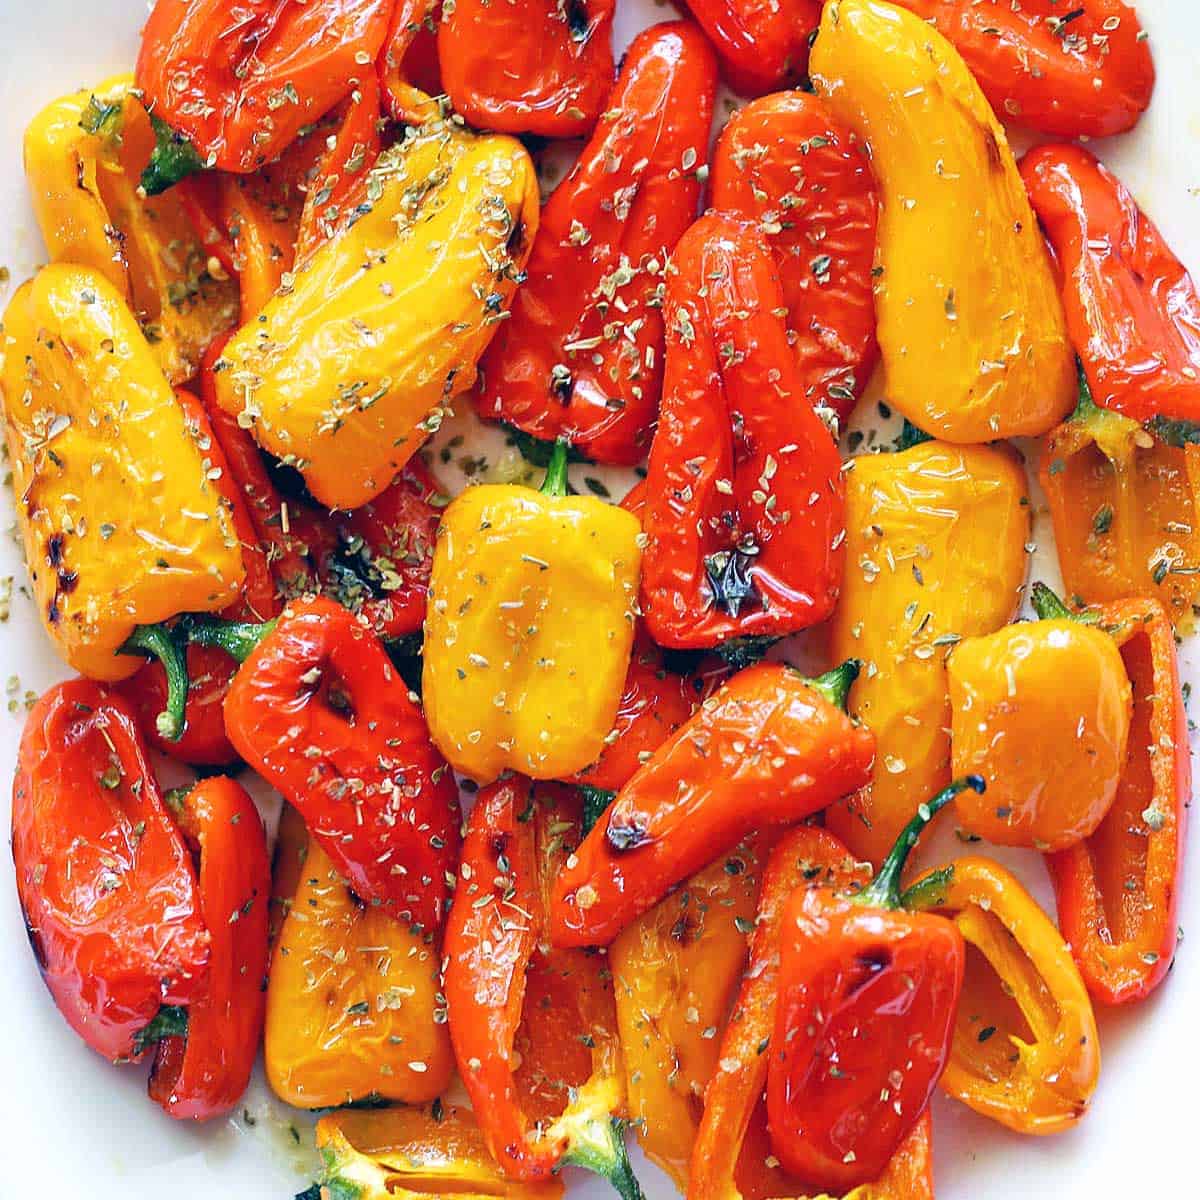 https://healthyrecipesblogs.com/wp-content/uploads/2014/06/mini-sweet-peppers-featured-2022.jpg